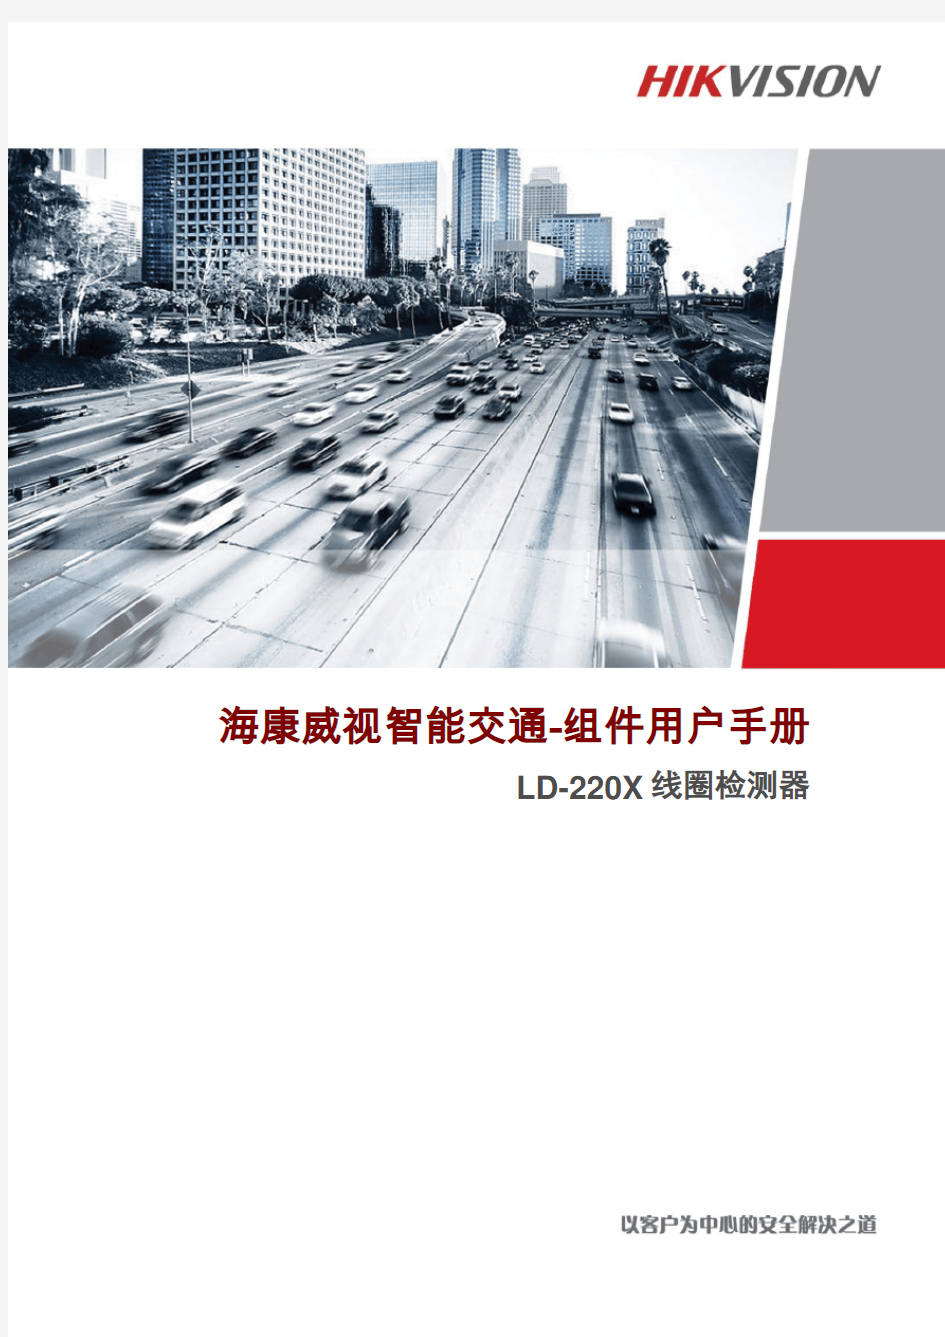 海康威视智能交通-组件用户手册(LD-220x线圈检测器)